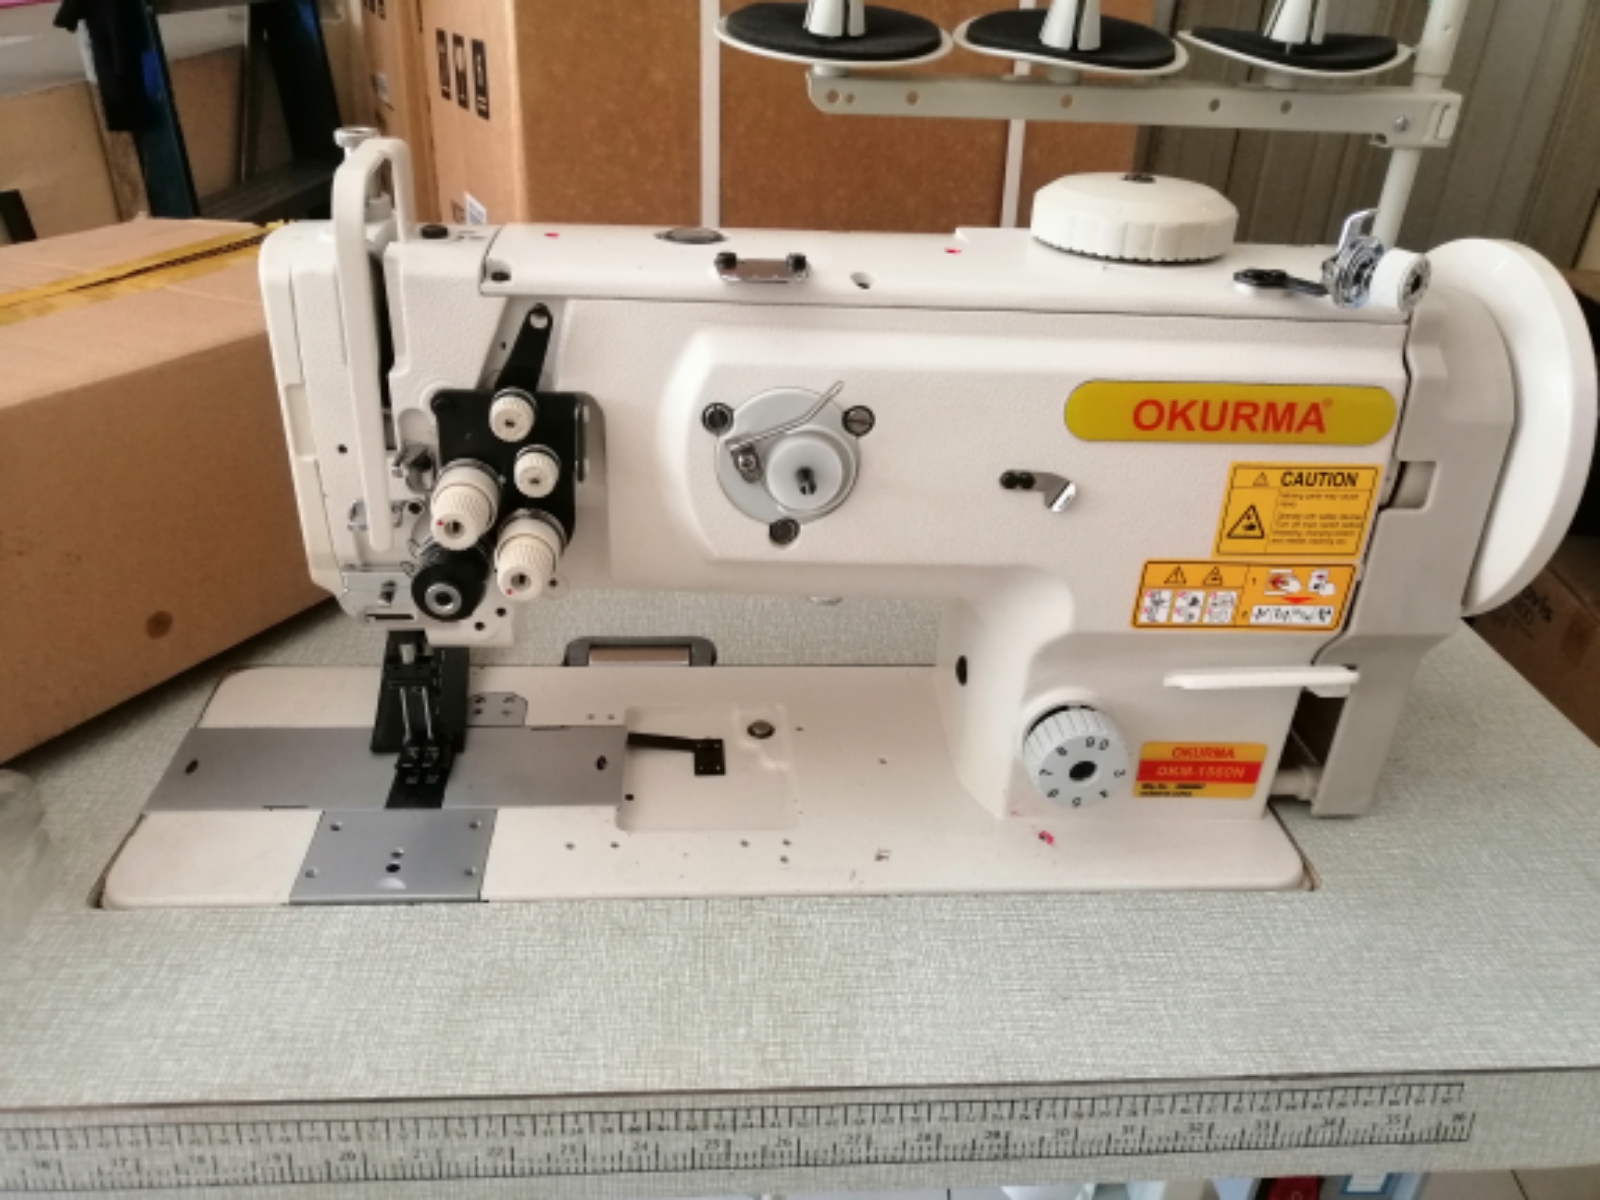 Okurma Industrial working foot Sewing Machine 